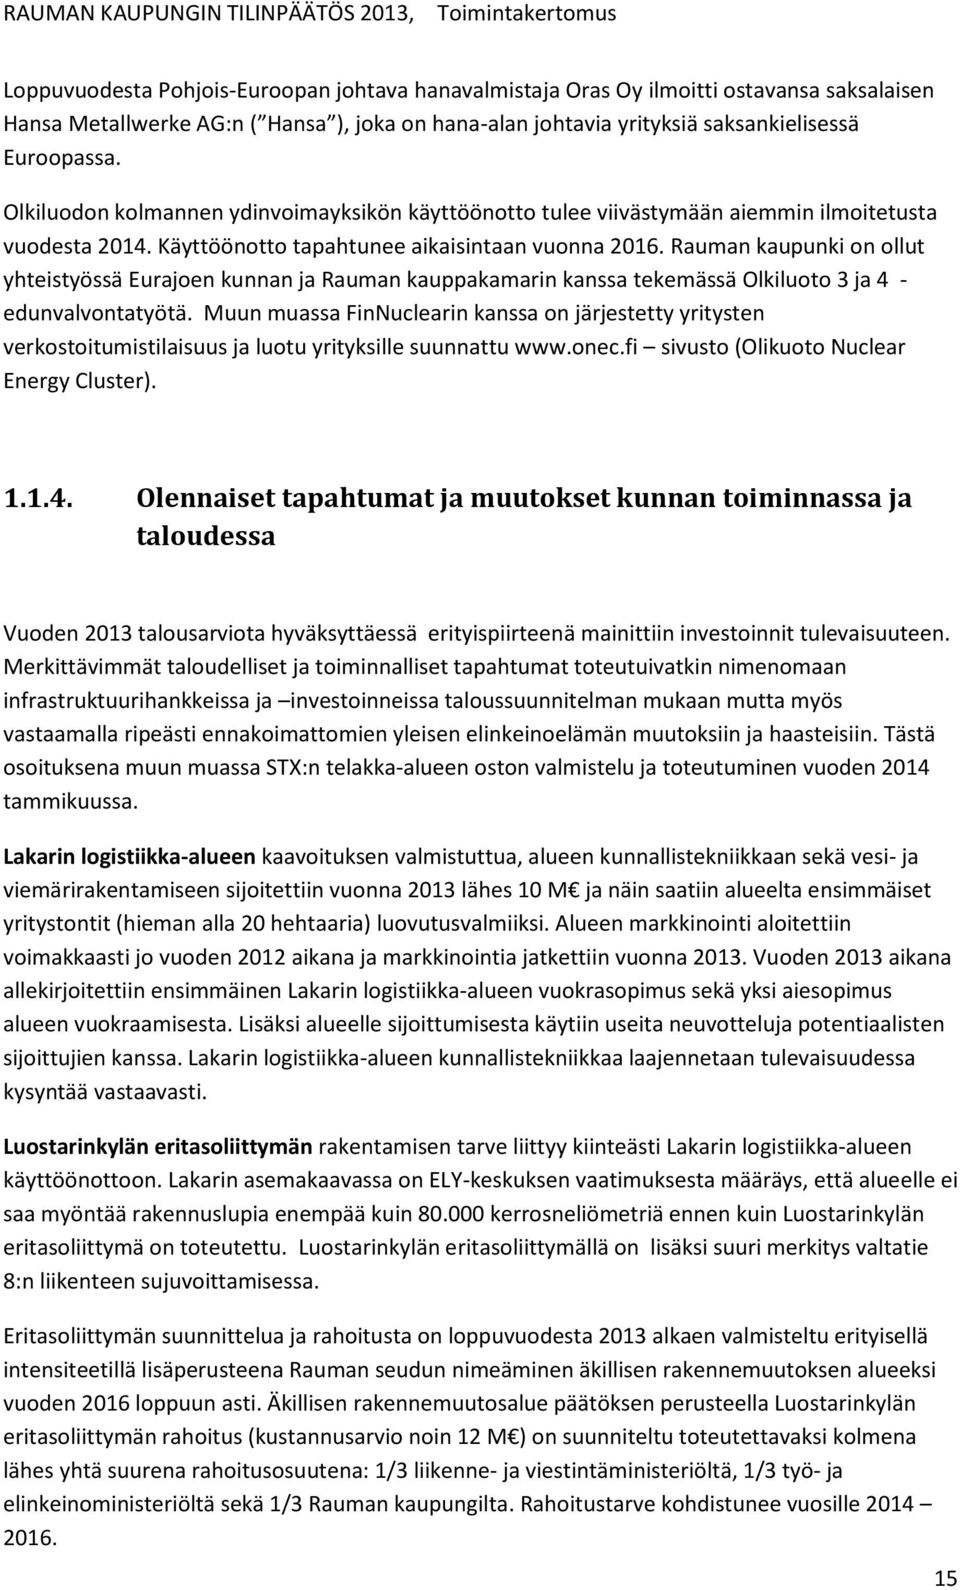 Käyttöönotto tapahtunee aikaisintaan vuonna 2016. Rauman kaupunki on ollut yhteistyössä Eurajoen kunnan ja Rauman kauppakamarin kanssa tekemässä Olkiluoto 3 ja 4 - edunvalvontatyötä.